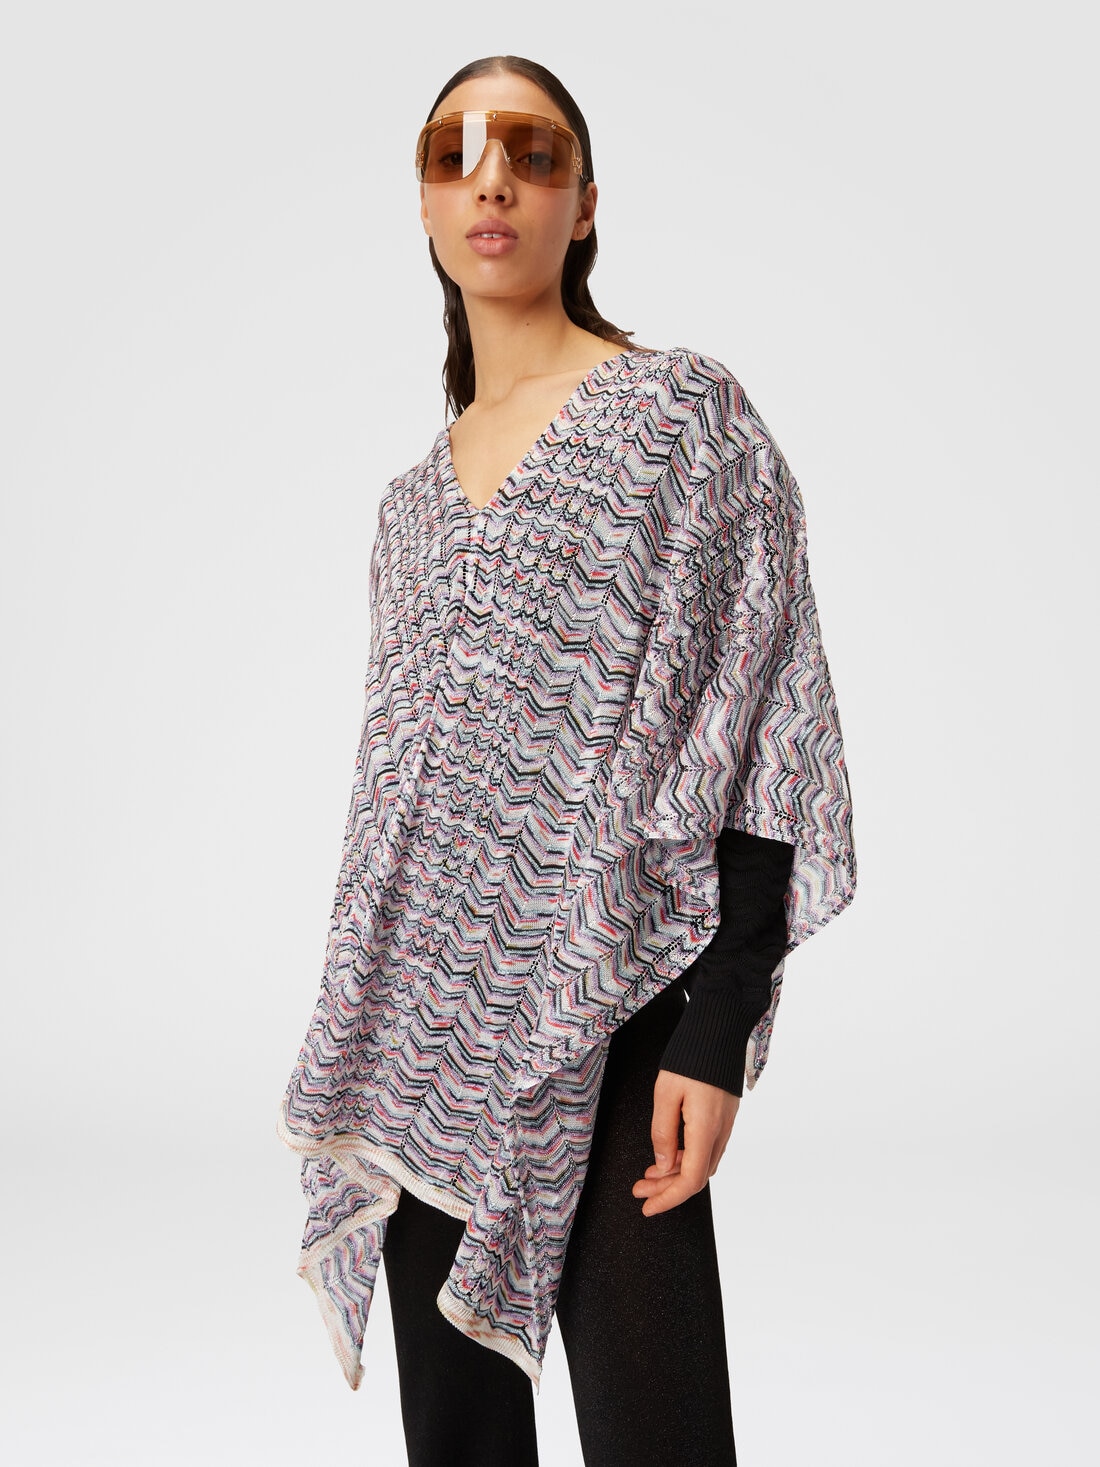 Poncho in viscose and cotton chevron knit, Multicoloured  - 8053147141190 - 3